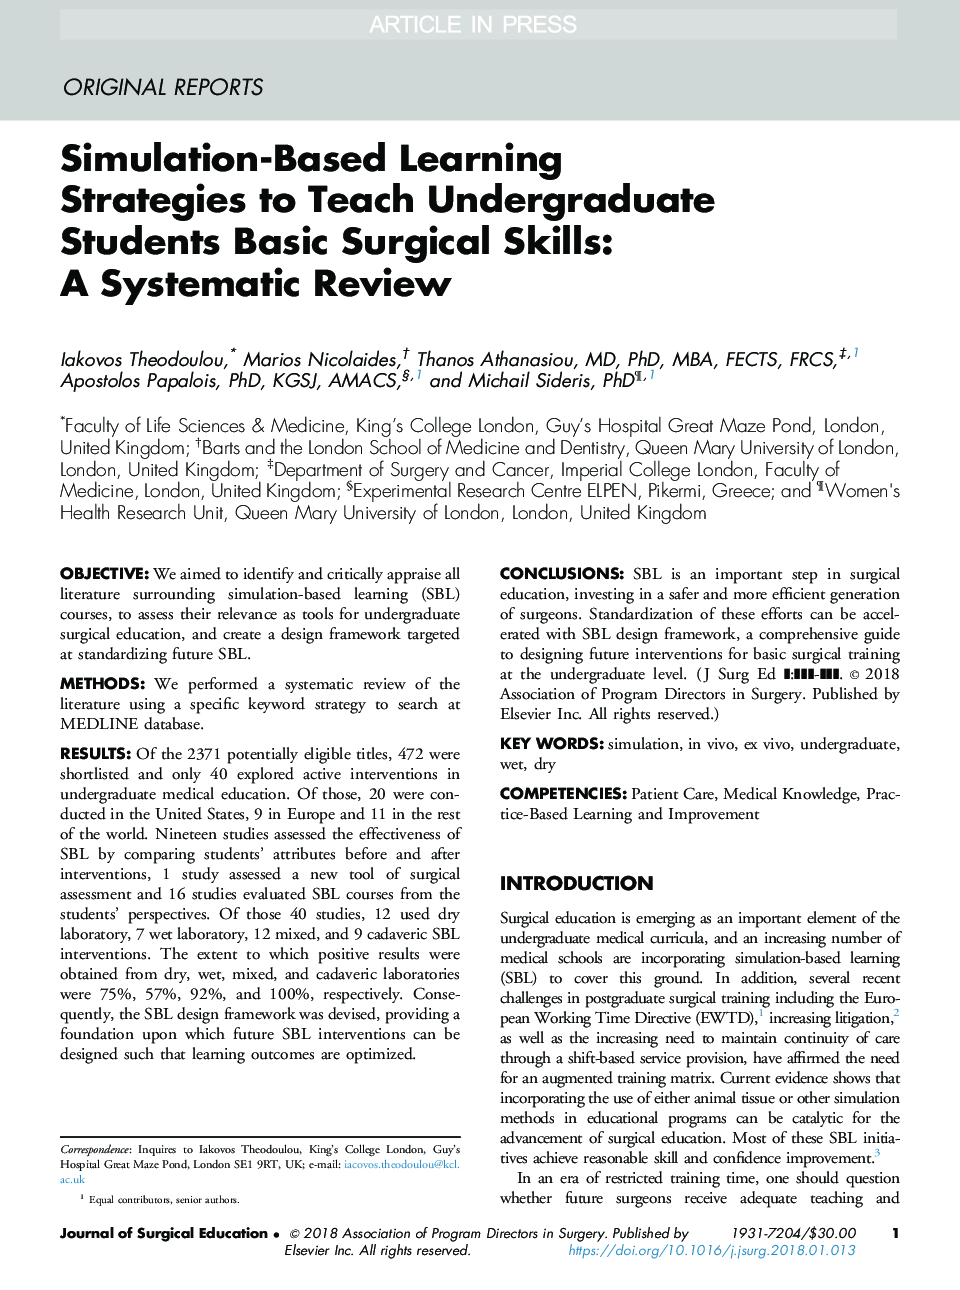 استراتژی های یادگیری مبتنی بر شبیه سازی برای آموزش دانشجویان کارشناسی ارشد مهارت های جراحی عمومی: یک مرور سیستماتیک